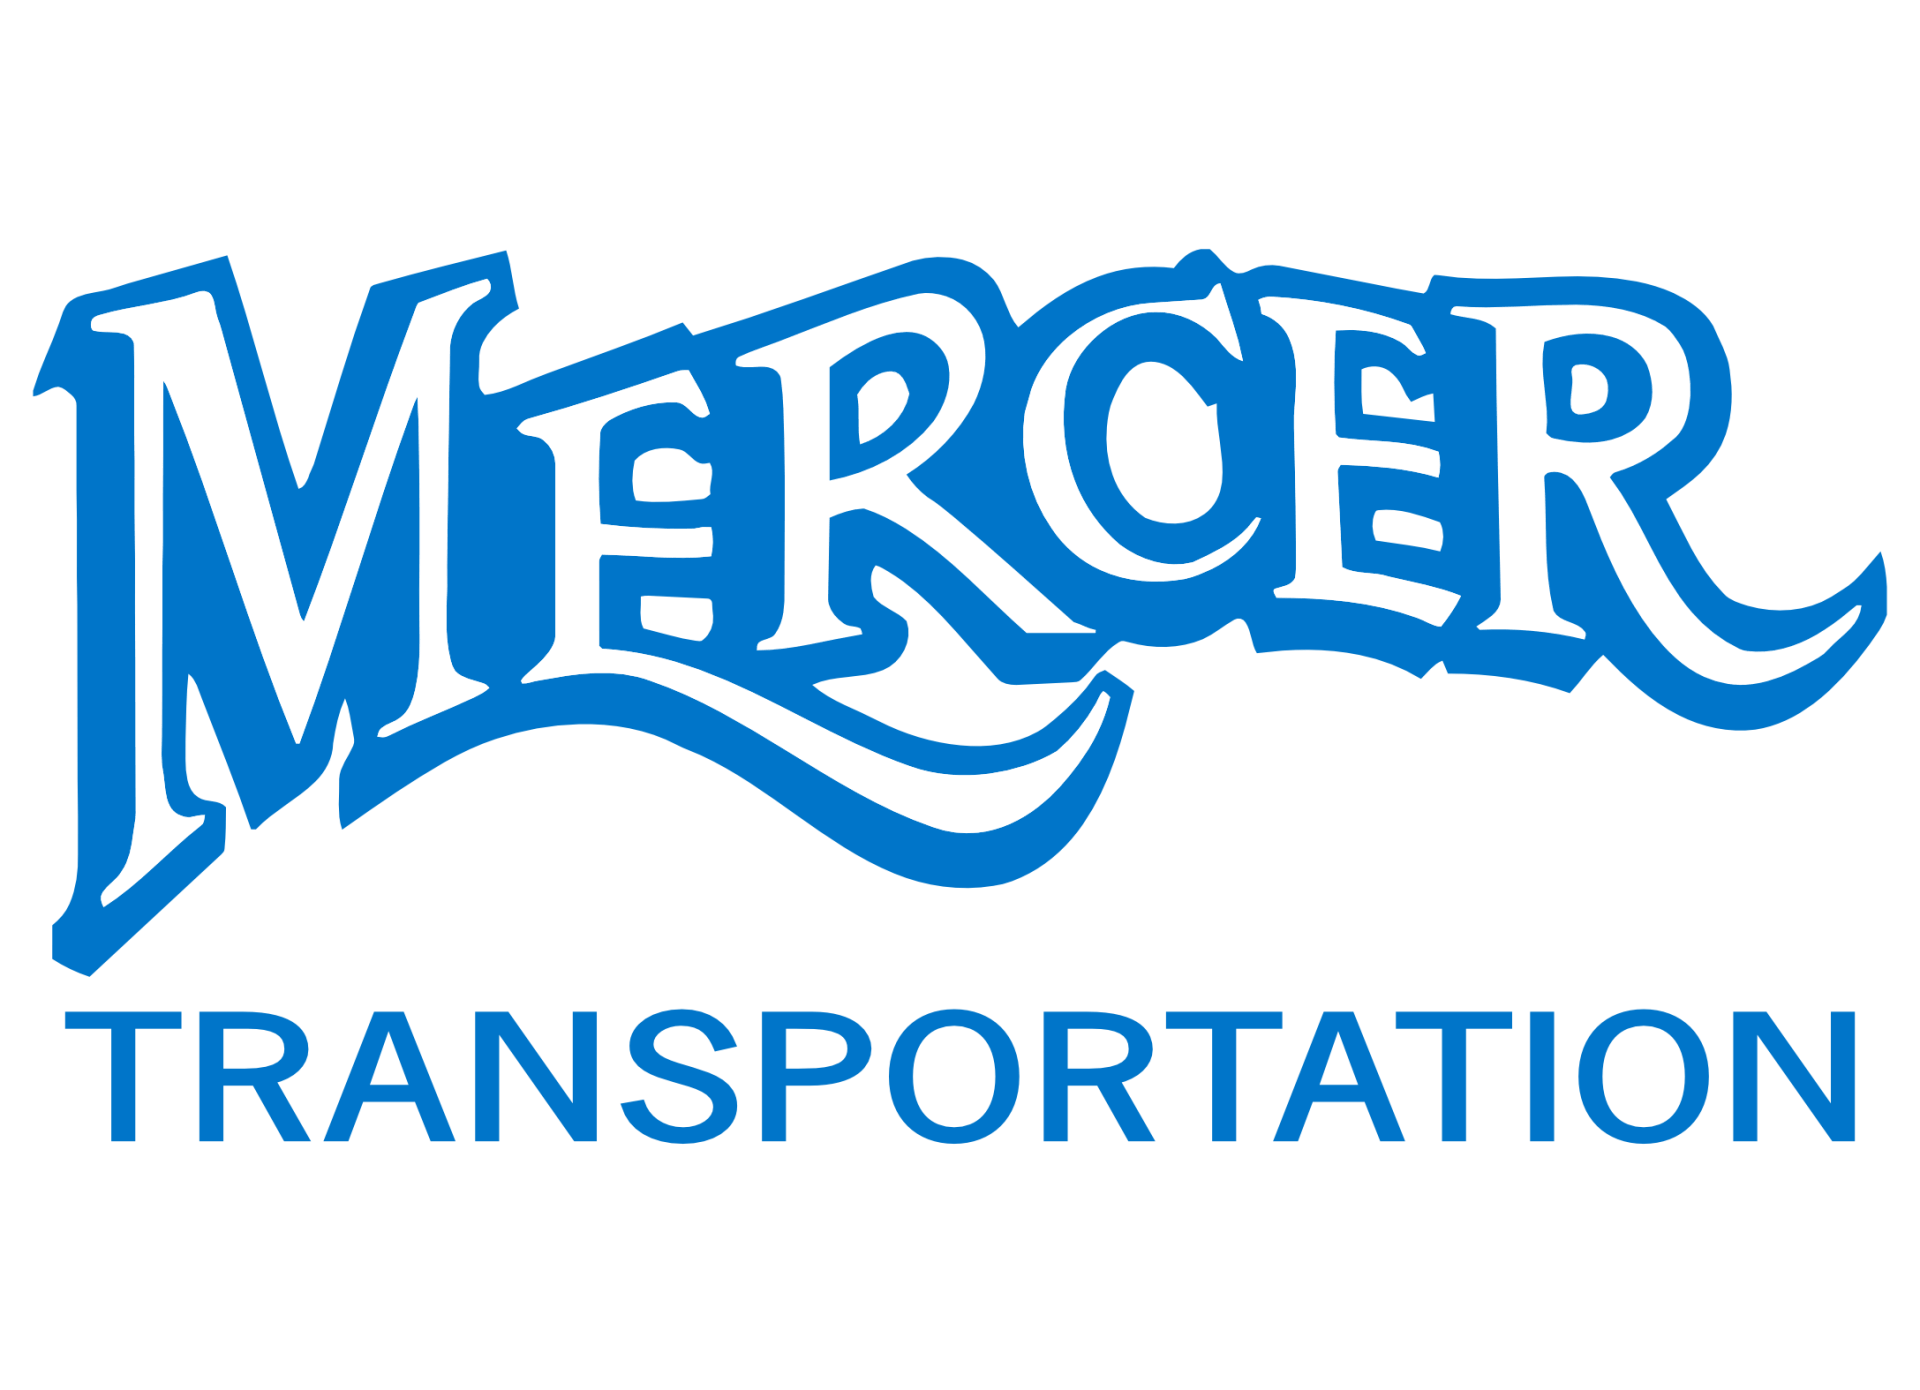 Mercer Transport - Logo